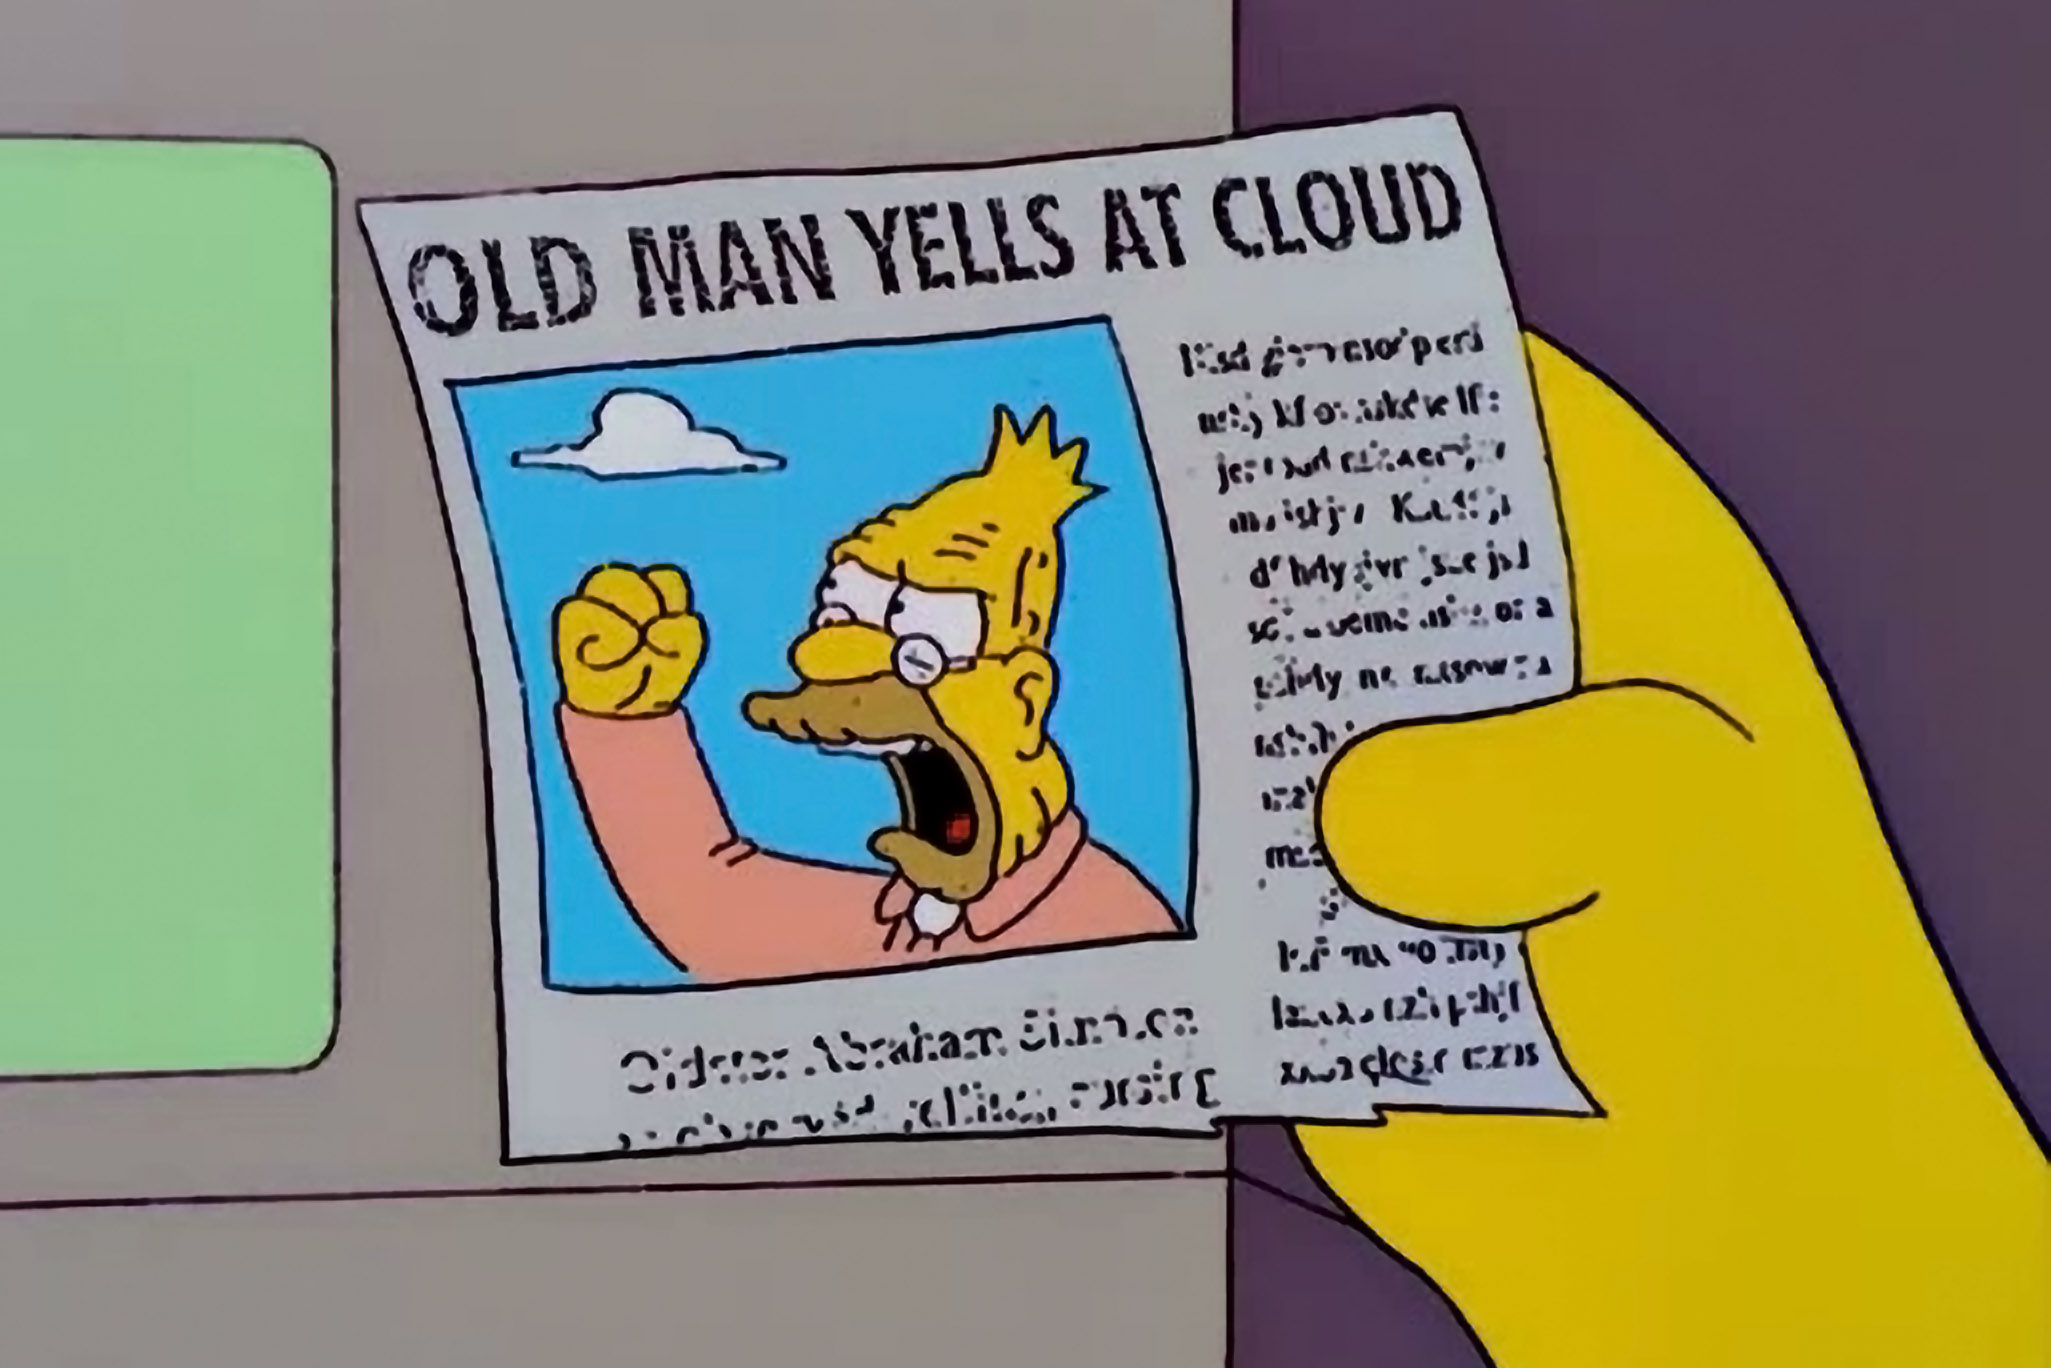 Old man yells at cloud